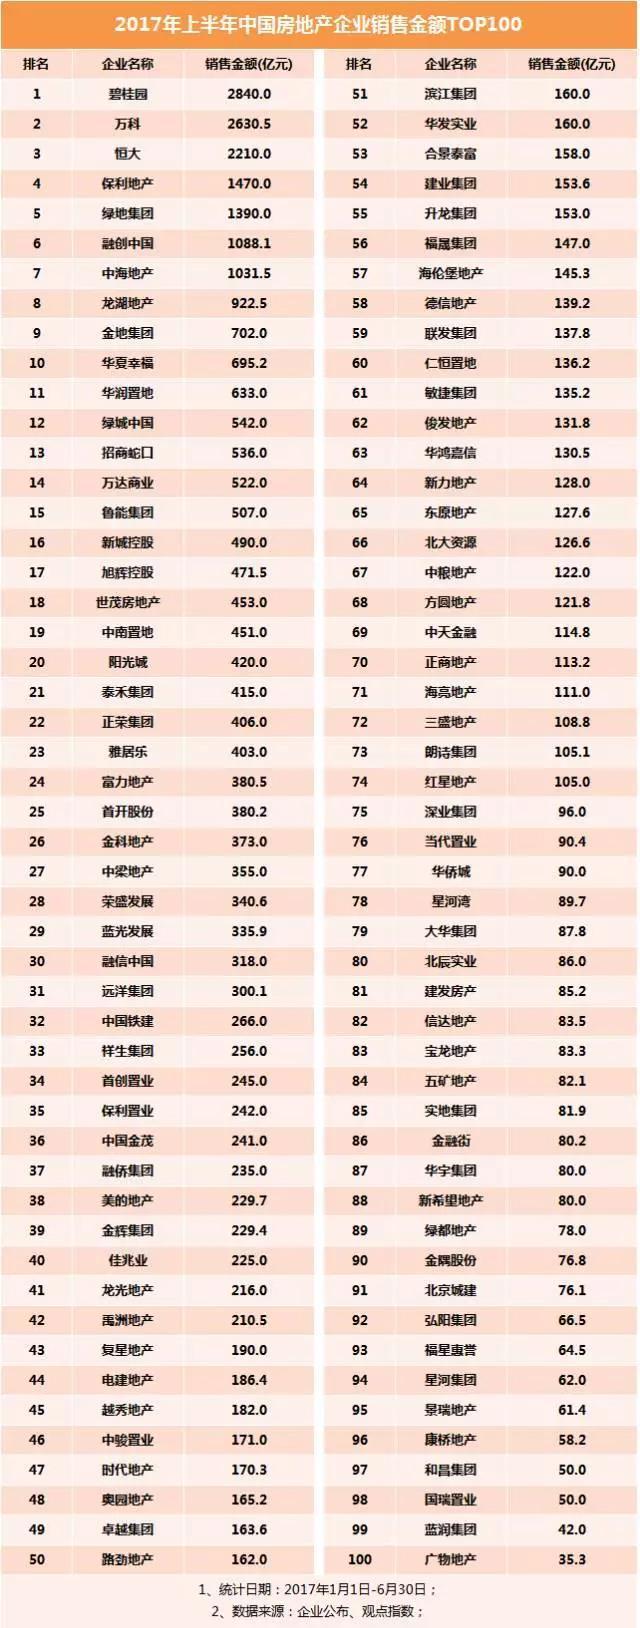 2017中国商业地产百强排名发布!